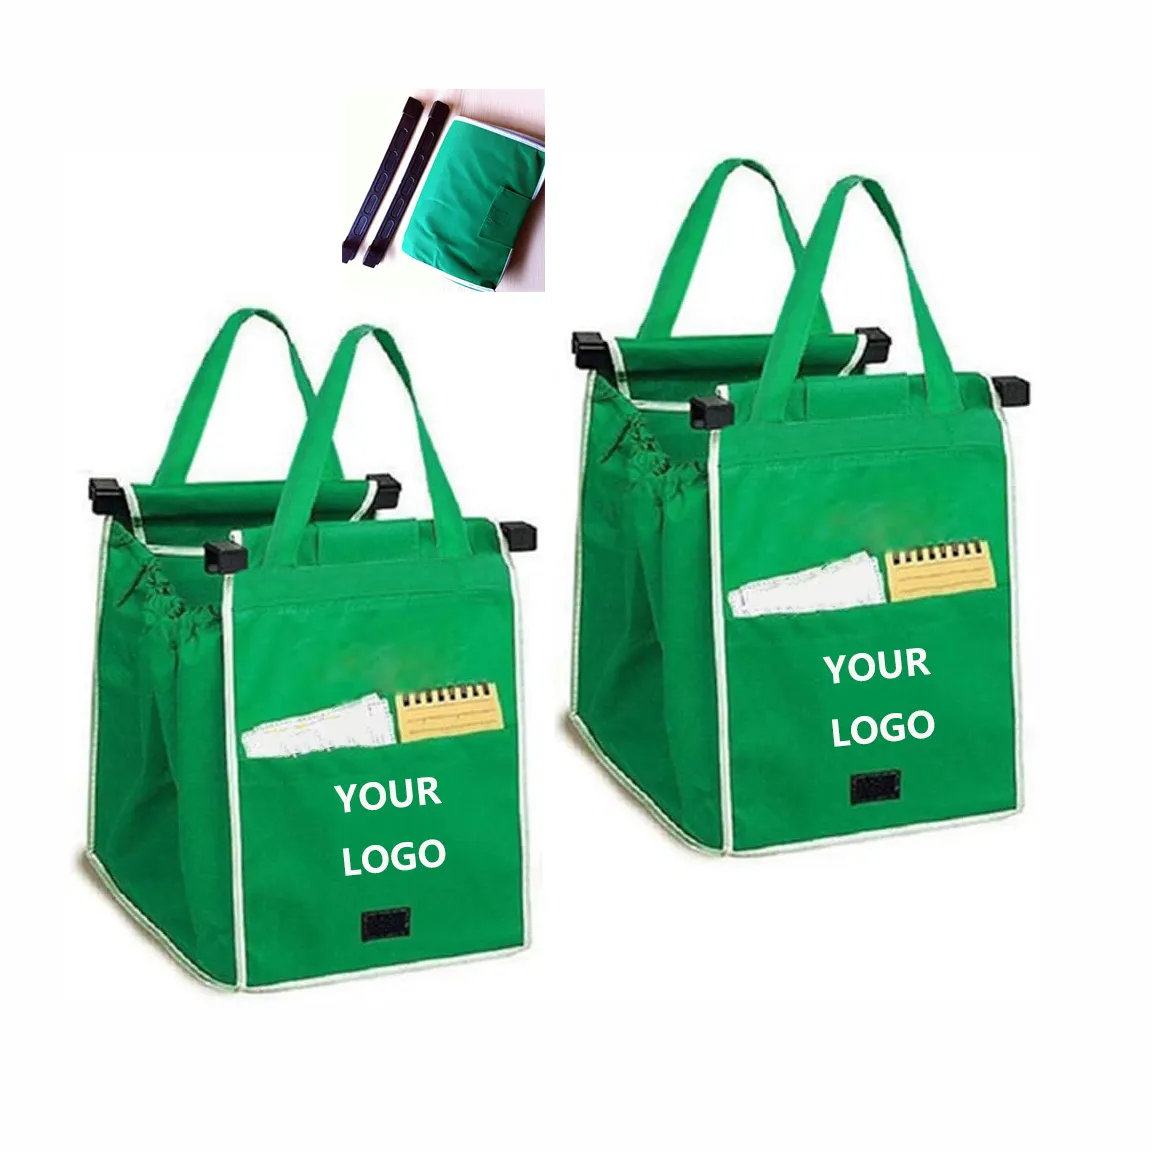 맞춤형 로고 도매 접을 수있는 식료품 토트 파우치 쇼핑 카트에 클립 재사용 쇼핑 트롤리 가방 손잡이로 잡아